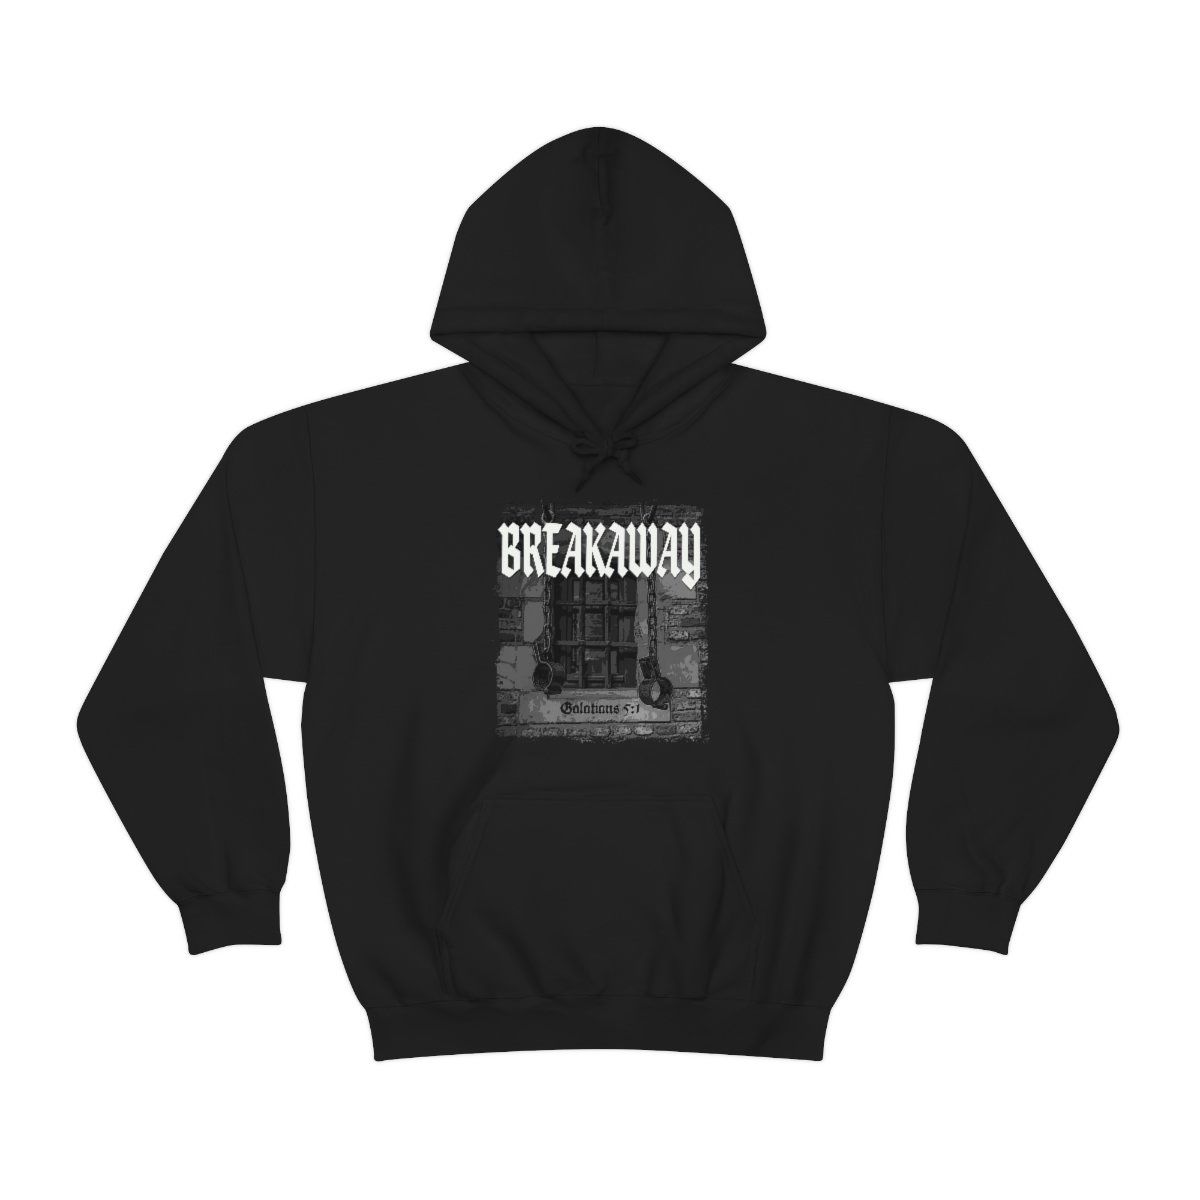 Breakaway – Shackles Pullover Hooded Sweatshirt 185MD